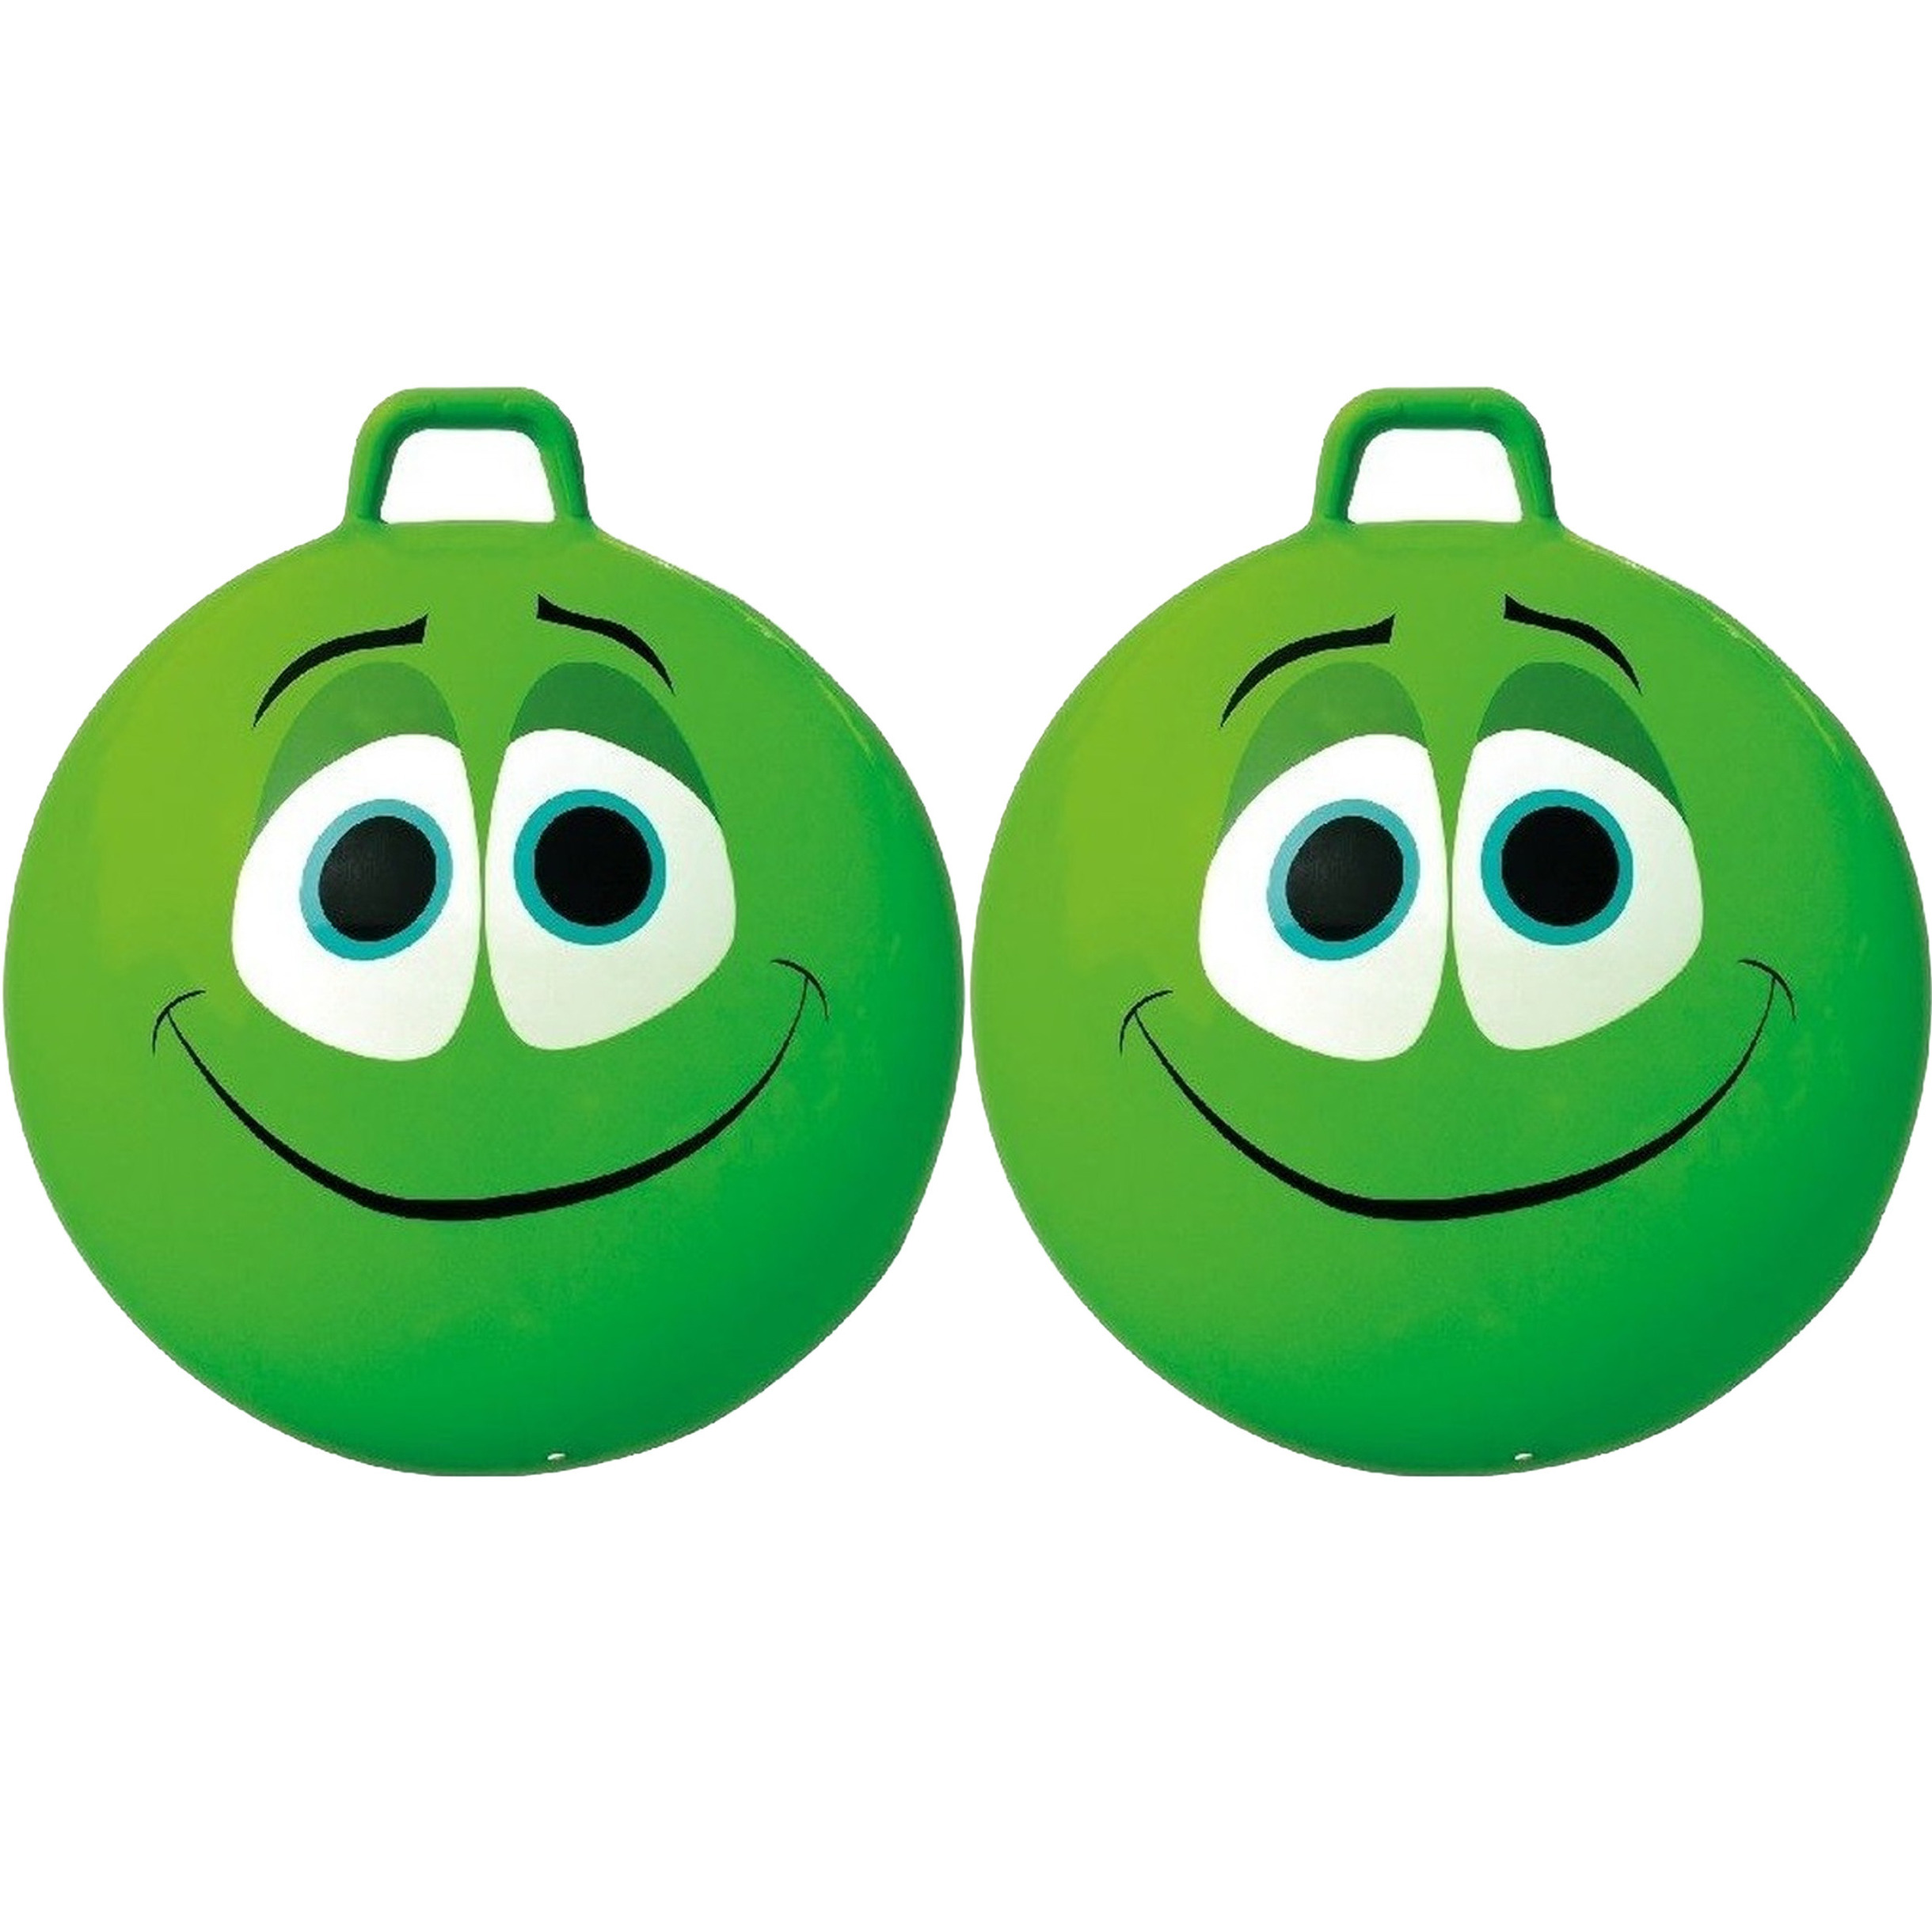 2x stuks smiley groene skippybal 65 cm